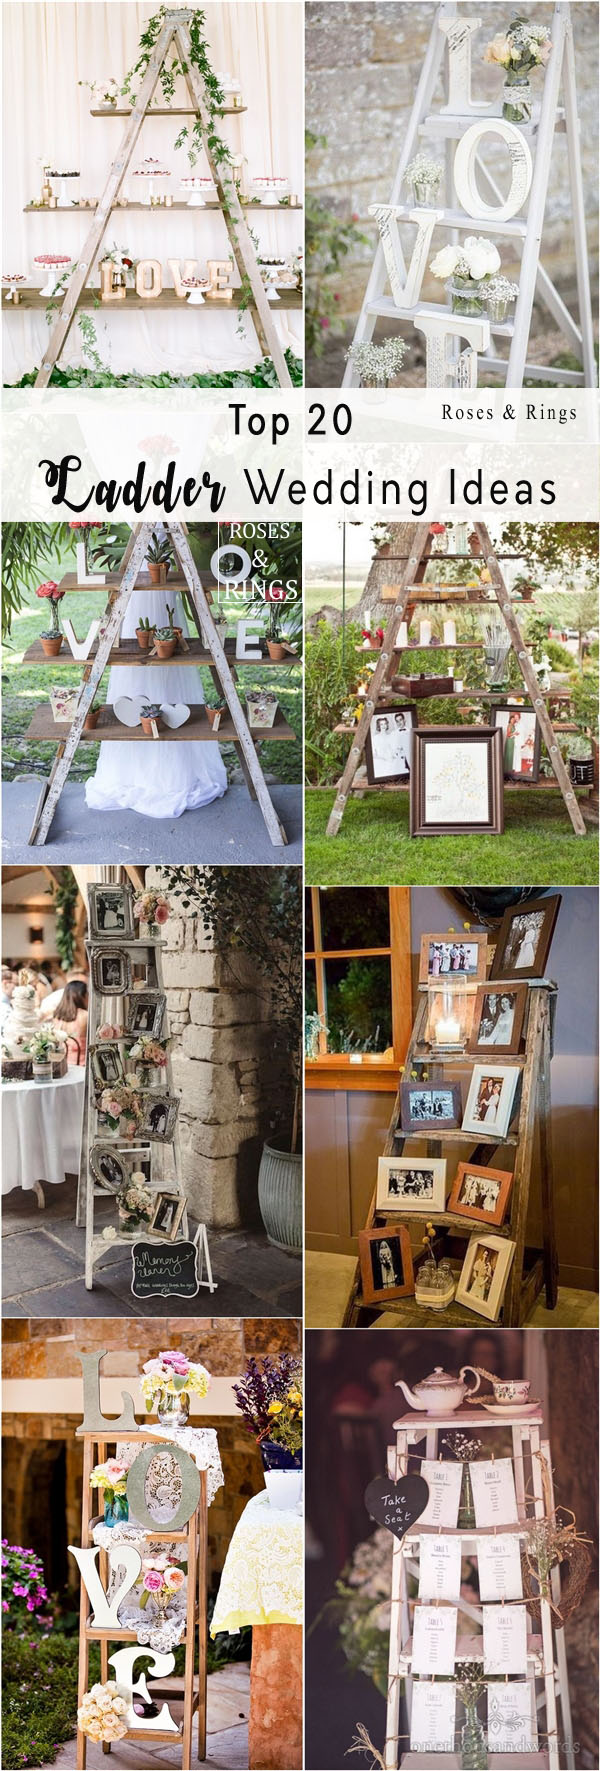 vintage wooden ladder wedding decor ideas